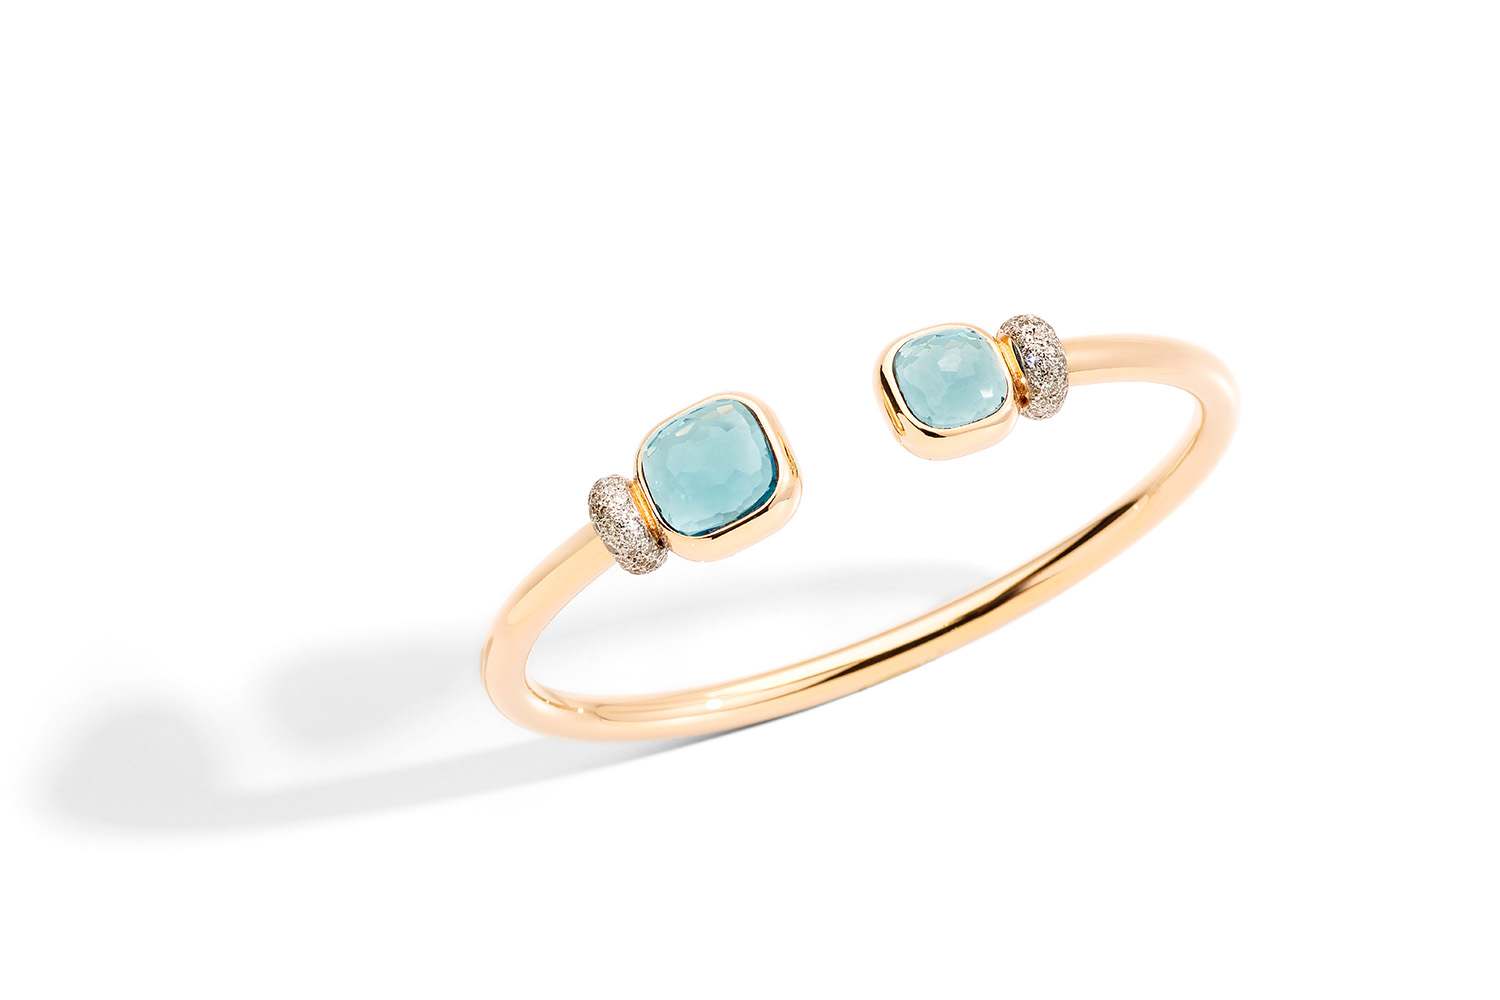 NUDO-bracelet-in-rose-gold-with-sky-blue-topaz-and-white-diamonds-by-Pomellato-–-kopia